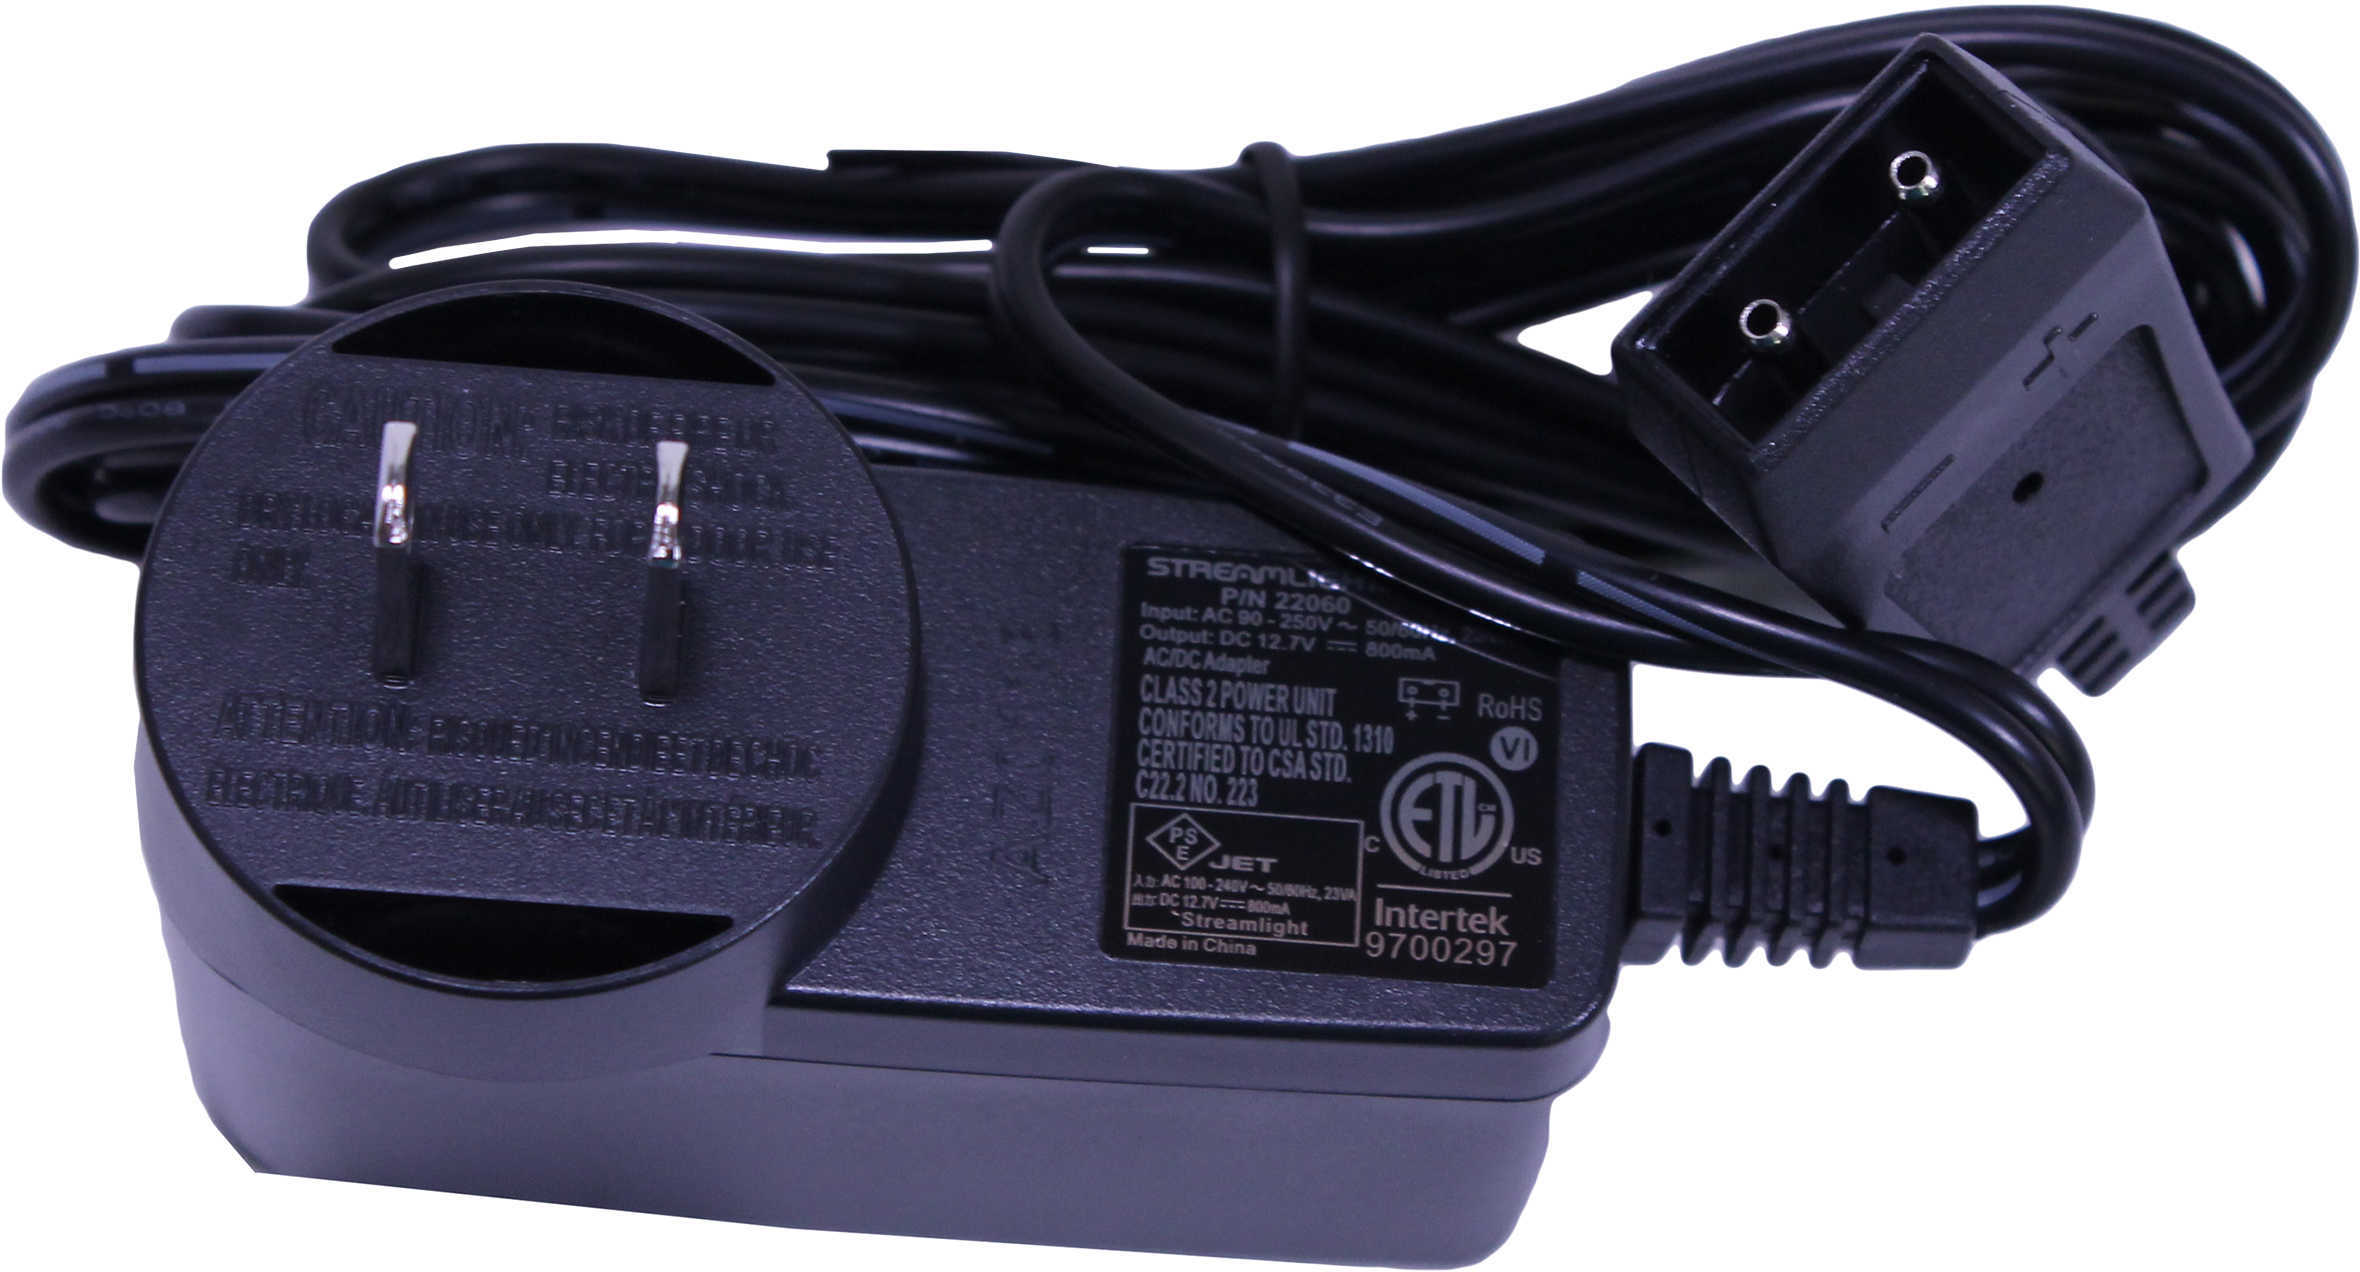 Streamlight Ac Plug Iec Type 100V/120V Model: 22060